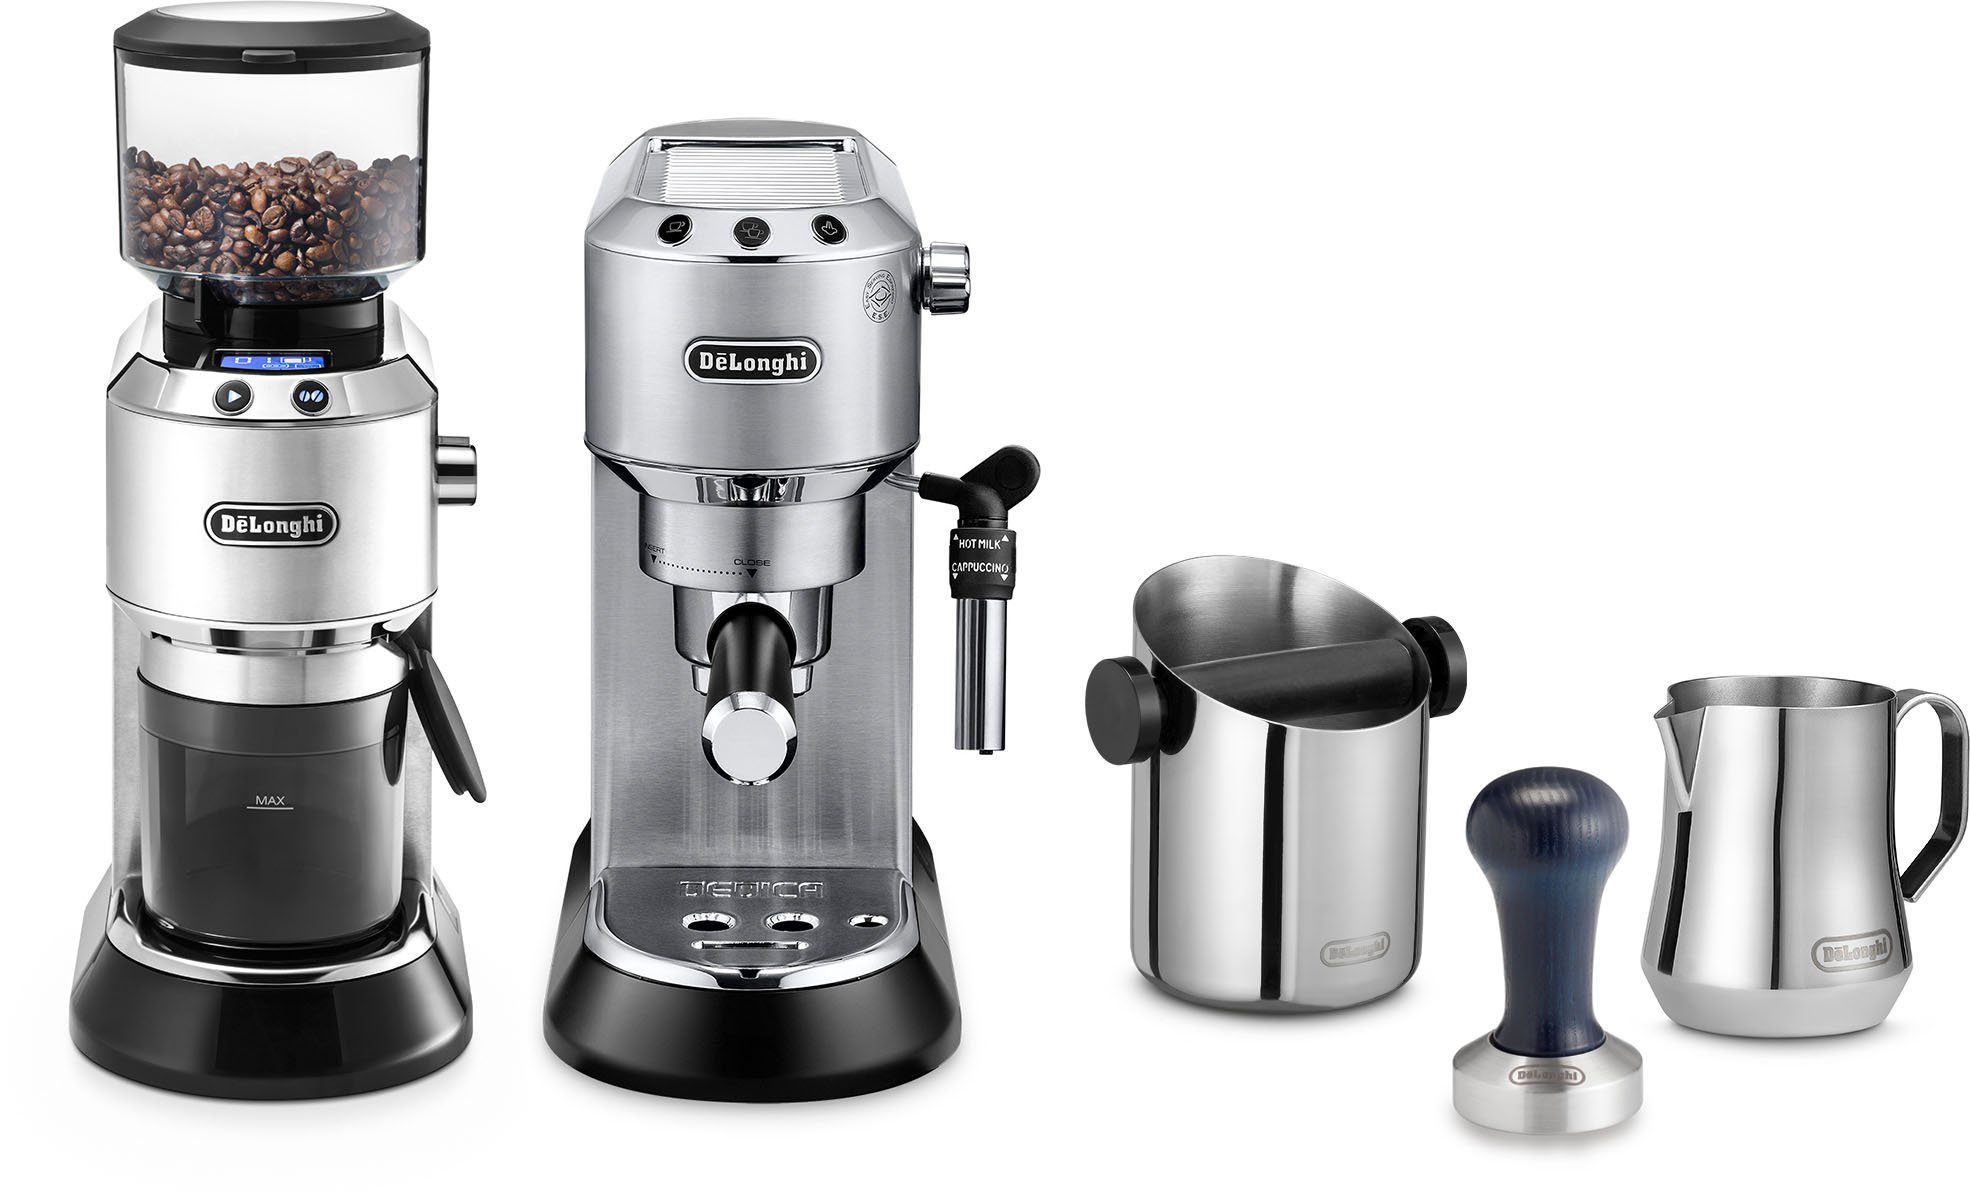 De'Longhi Espressomaschine ECKG6821.M, Siebträger, inkl. Kaffeemühle, Tamper, Abschlagbox+ Kännchen